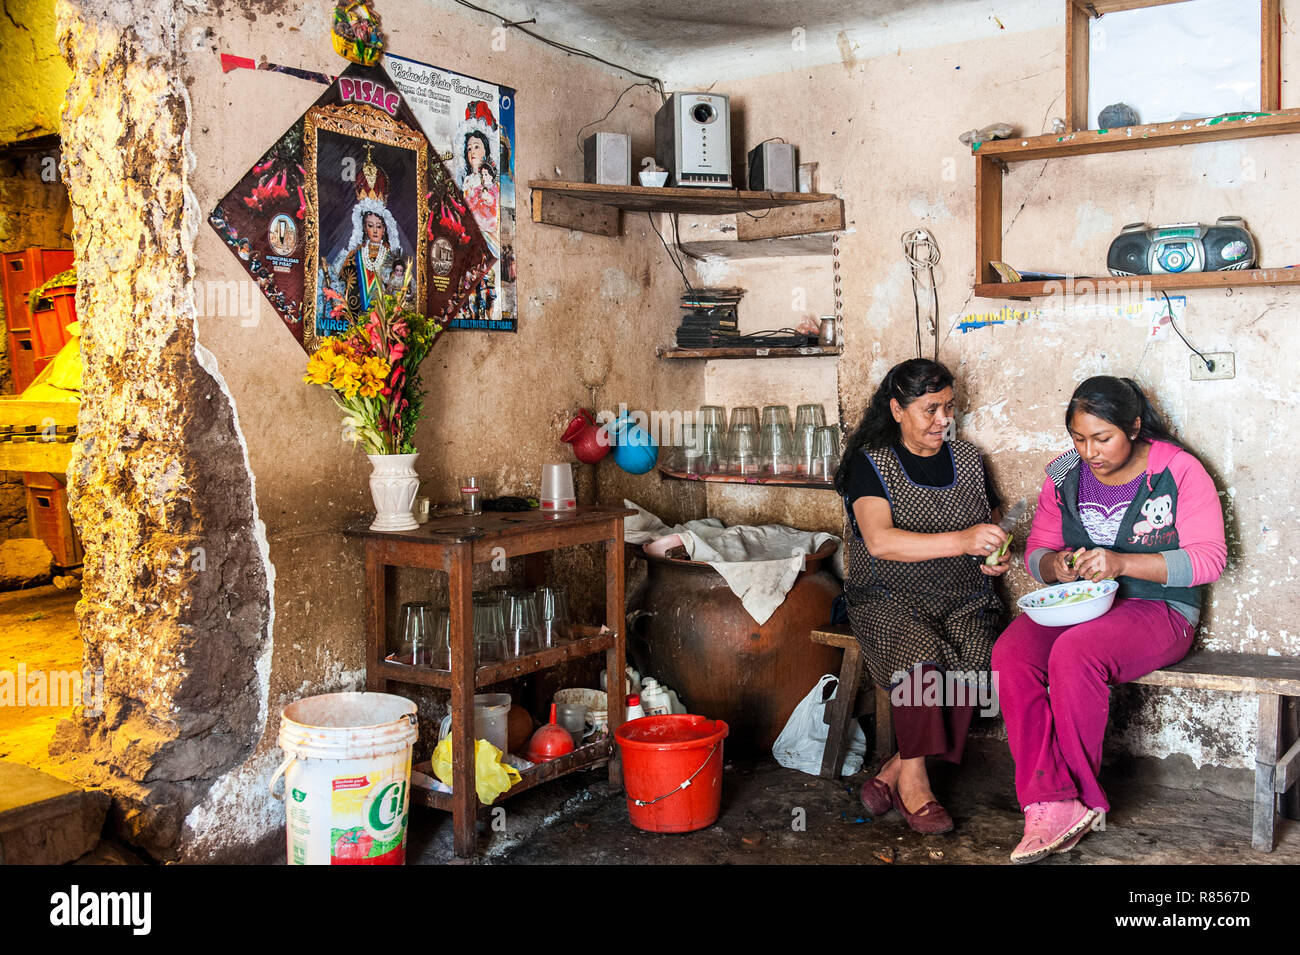 Chicheria è il posto in casa, in una stanza inutilizzata dove la gente locale sta bevendo la birra fresca chicha- Inca è fatta da una specie speciale di mais. Foto Stock